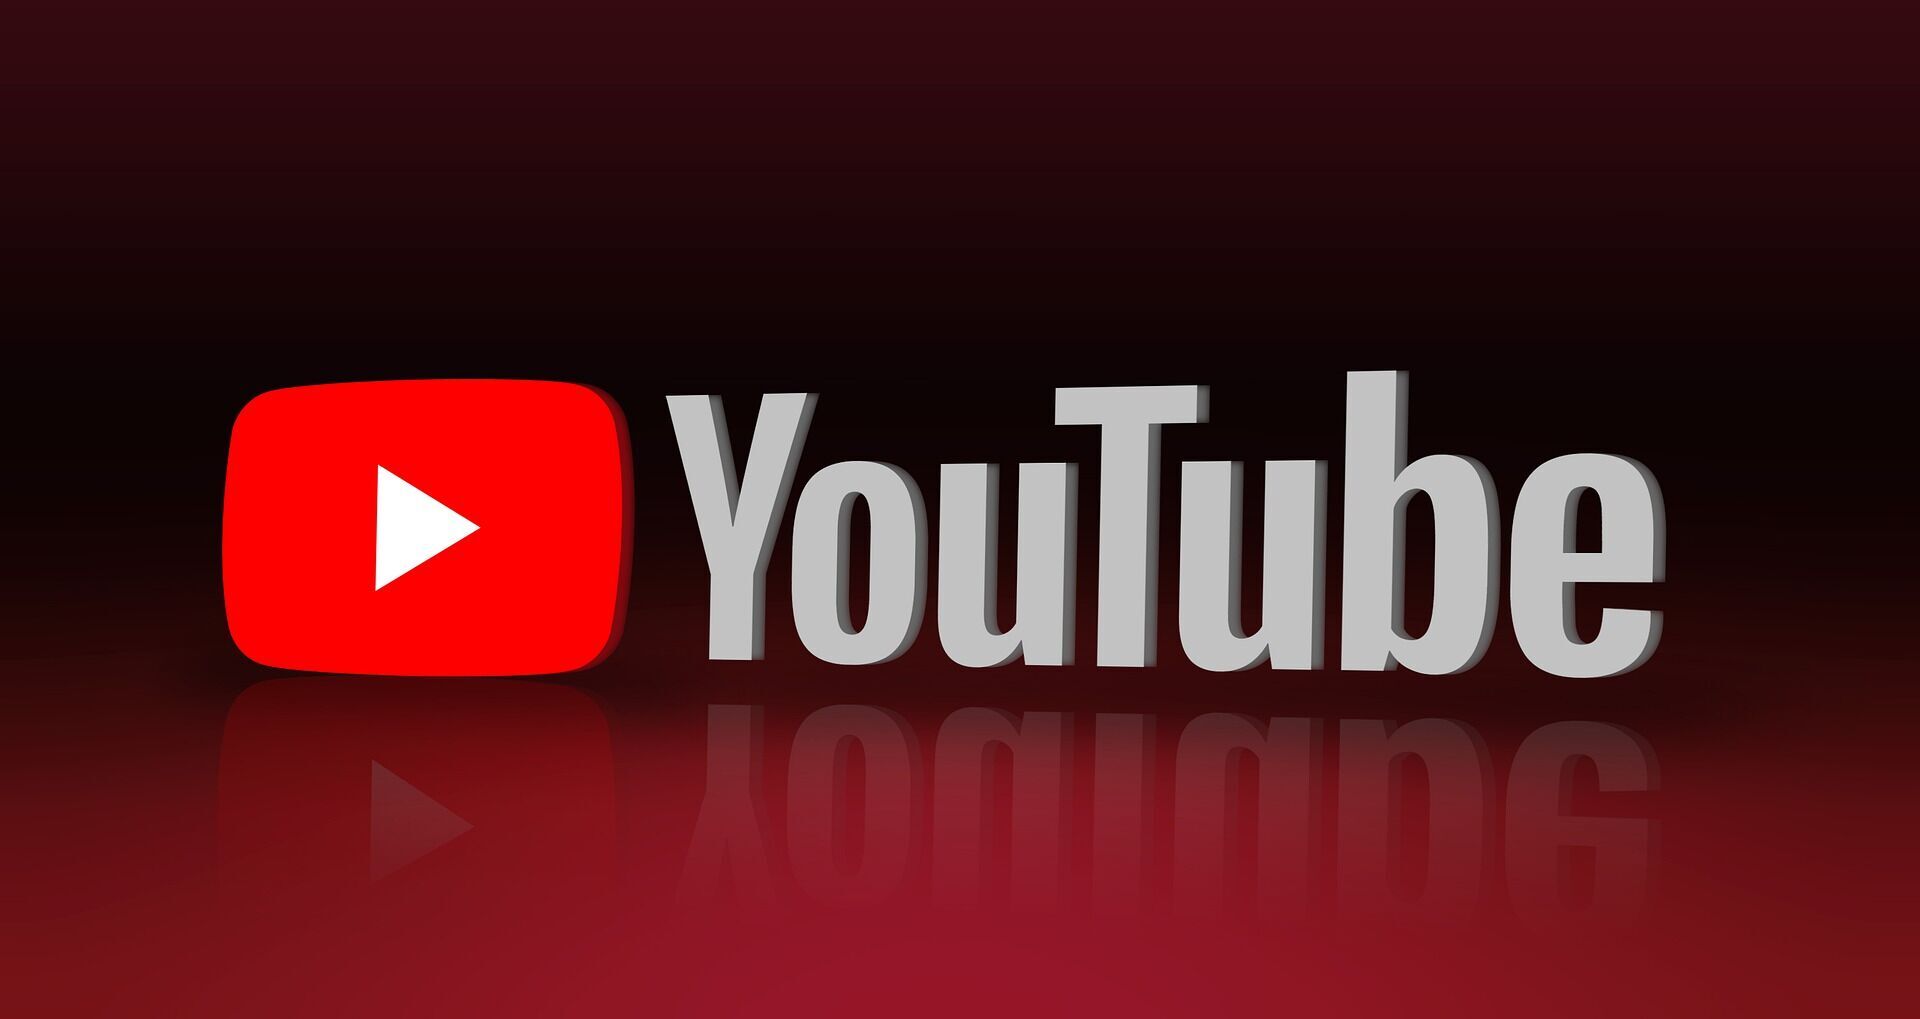 Google купила YouTube за 1,65 мільярда доларів